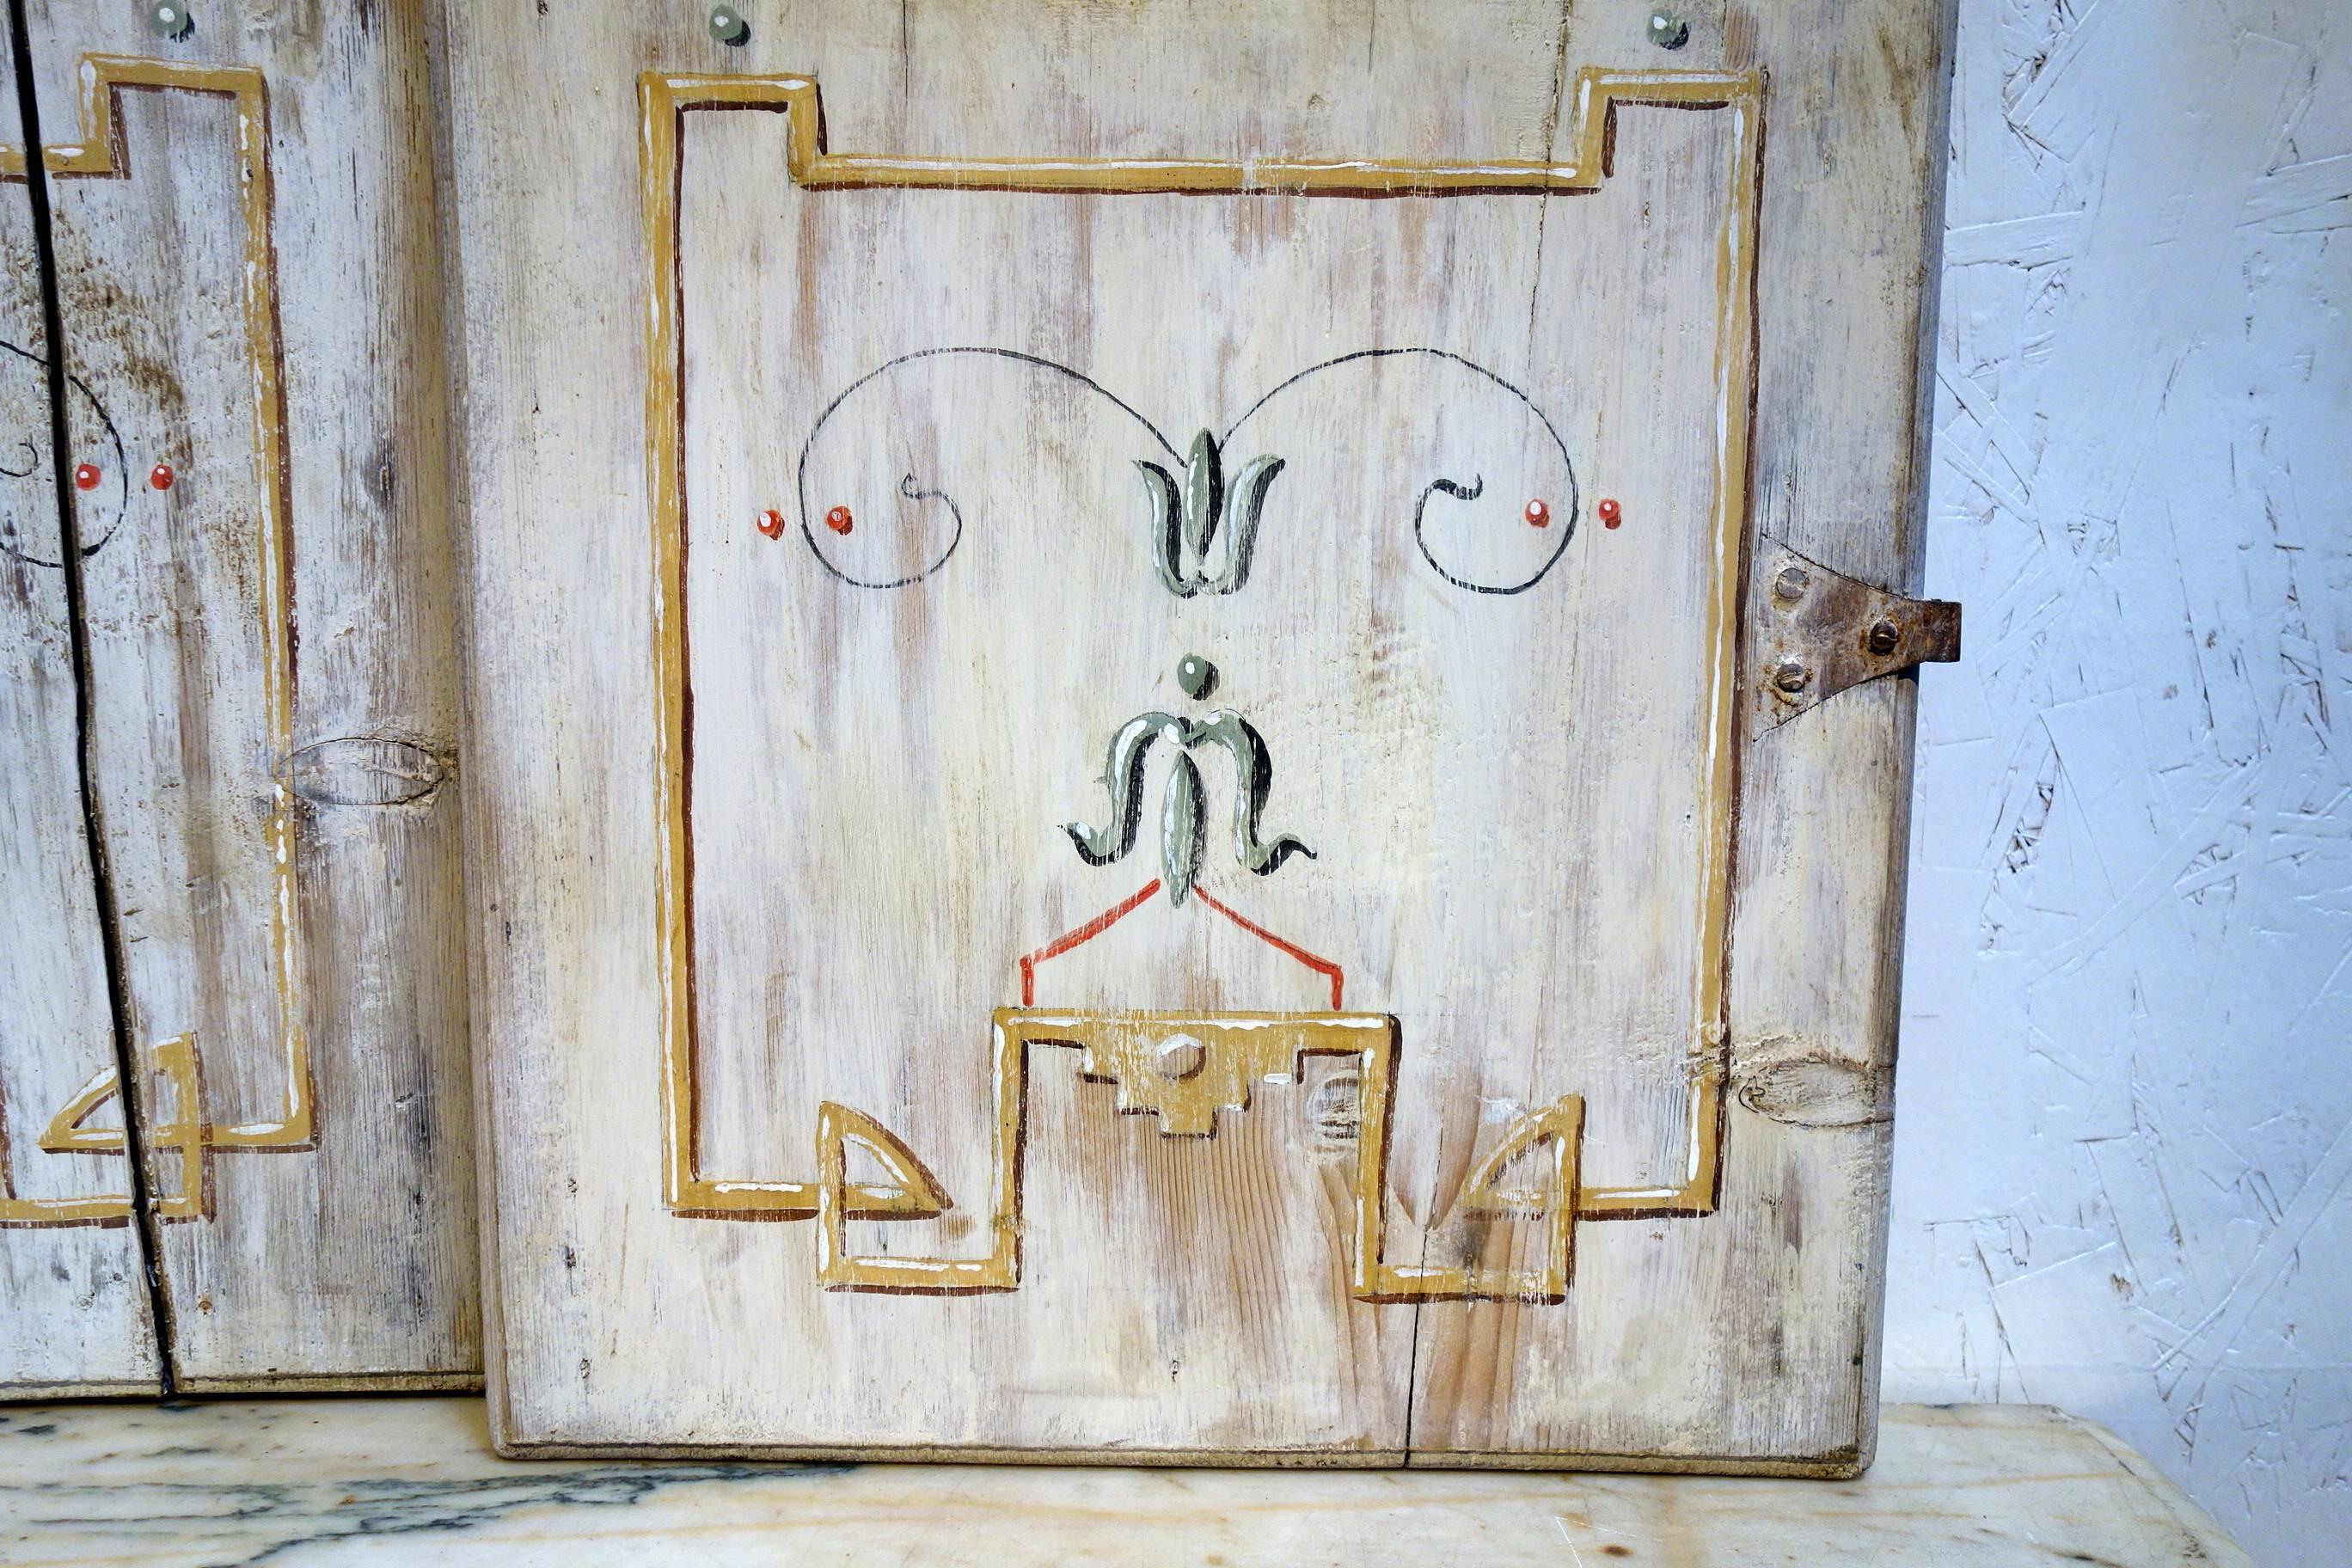 antique door panels